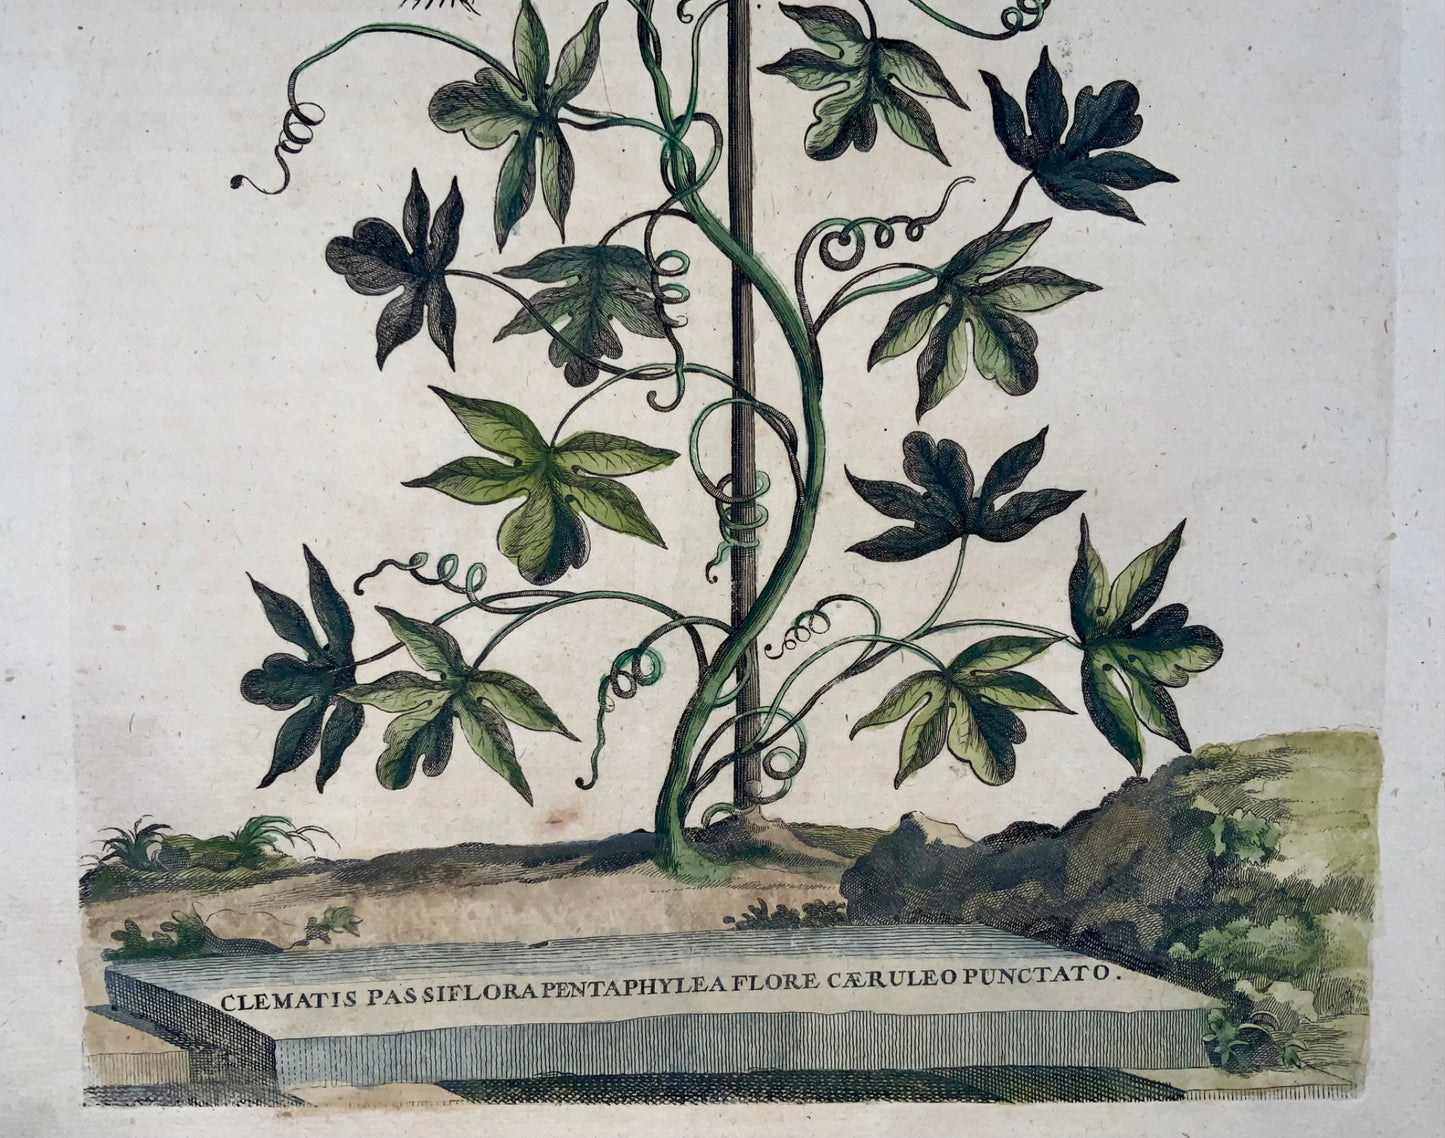 1696 Clematis Passiflora, large folio, botany, Abraham Munting, large folio